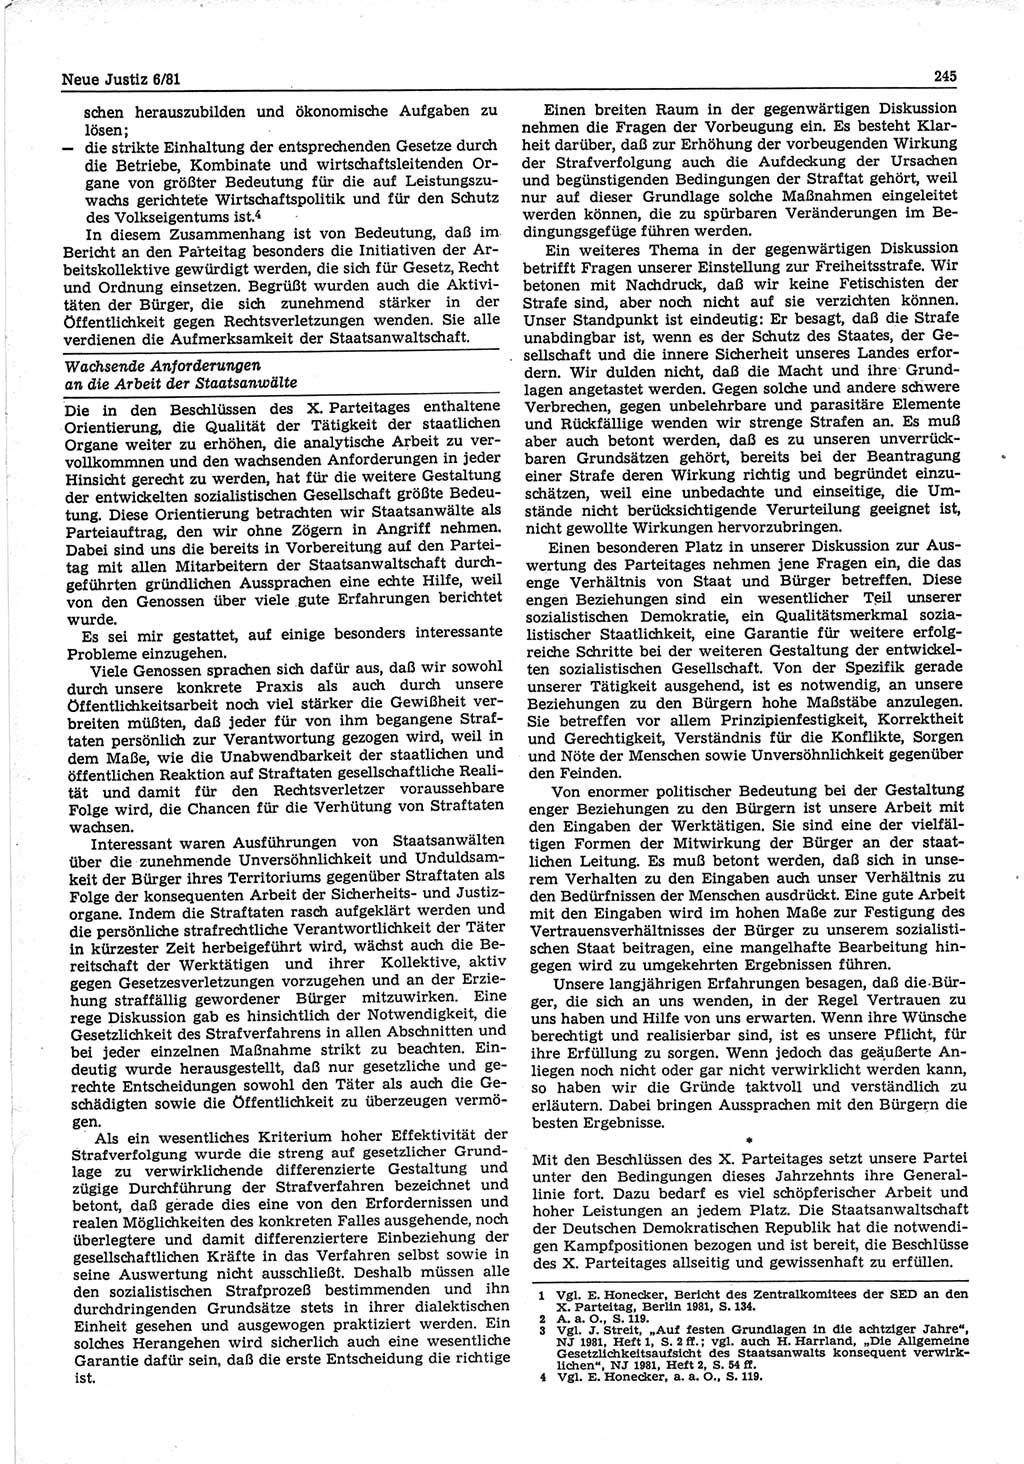 Neue Justiz (NJ), Zeitschrift für sozialistisches Recht und Gesetzlichkeit [Deutsche Demokratische Republik (DDR)], 35. Jahrgang 1981, Seite 245 (NJ DDR 1981, S. 245)